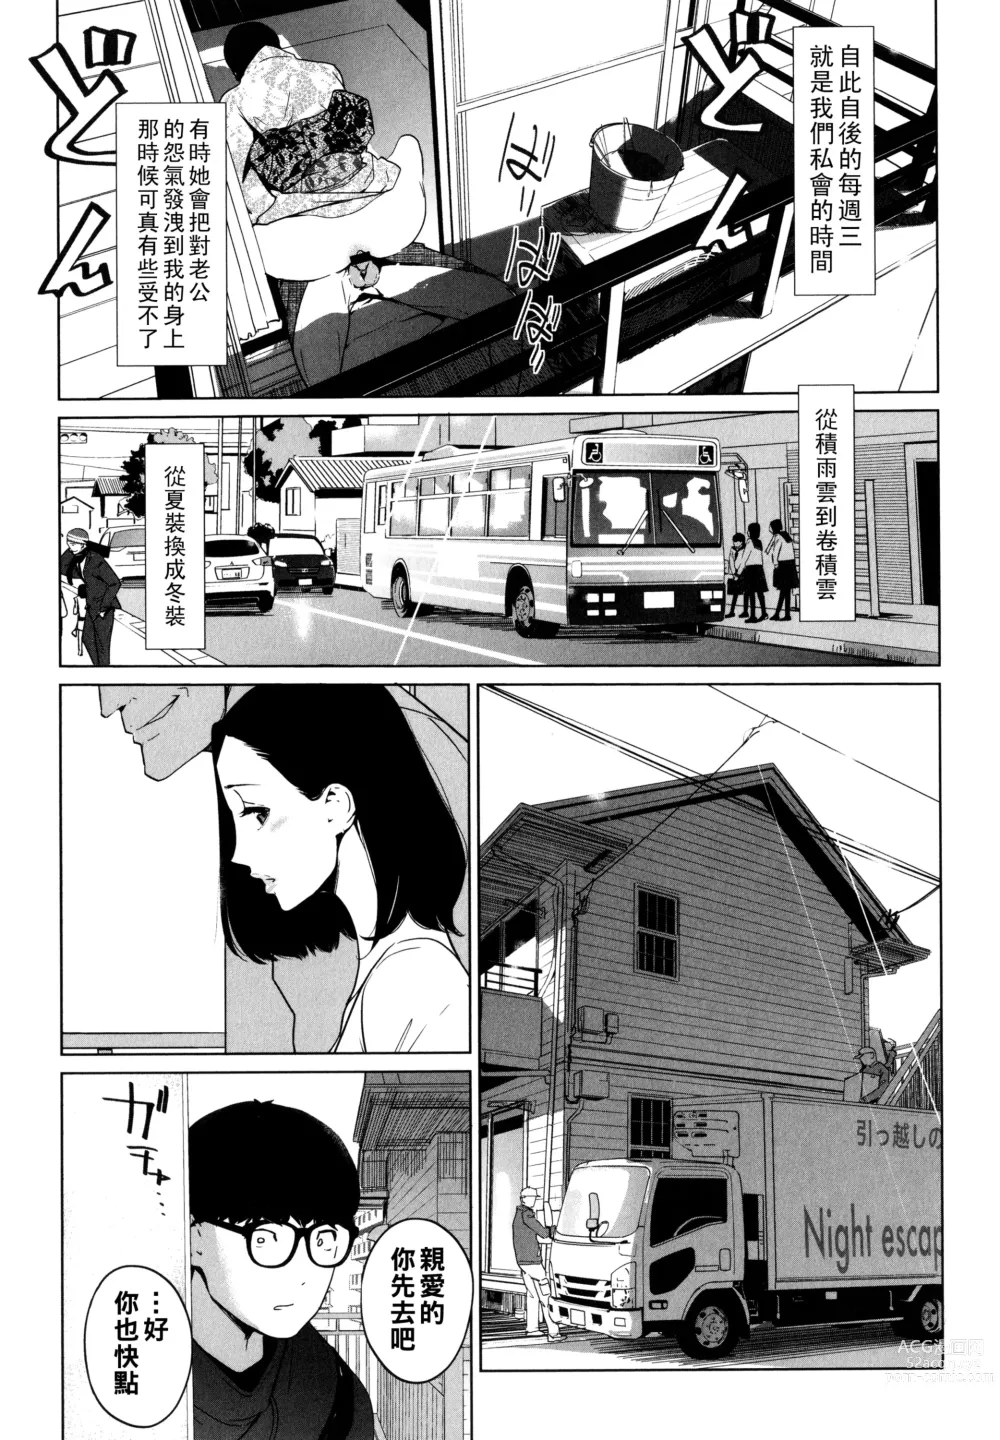 Page 129 of manga Natsu no Su